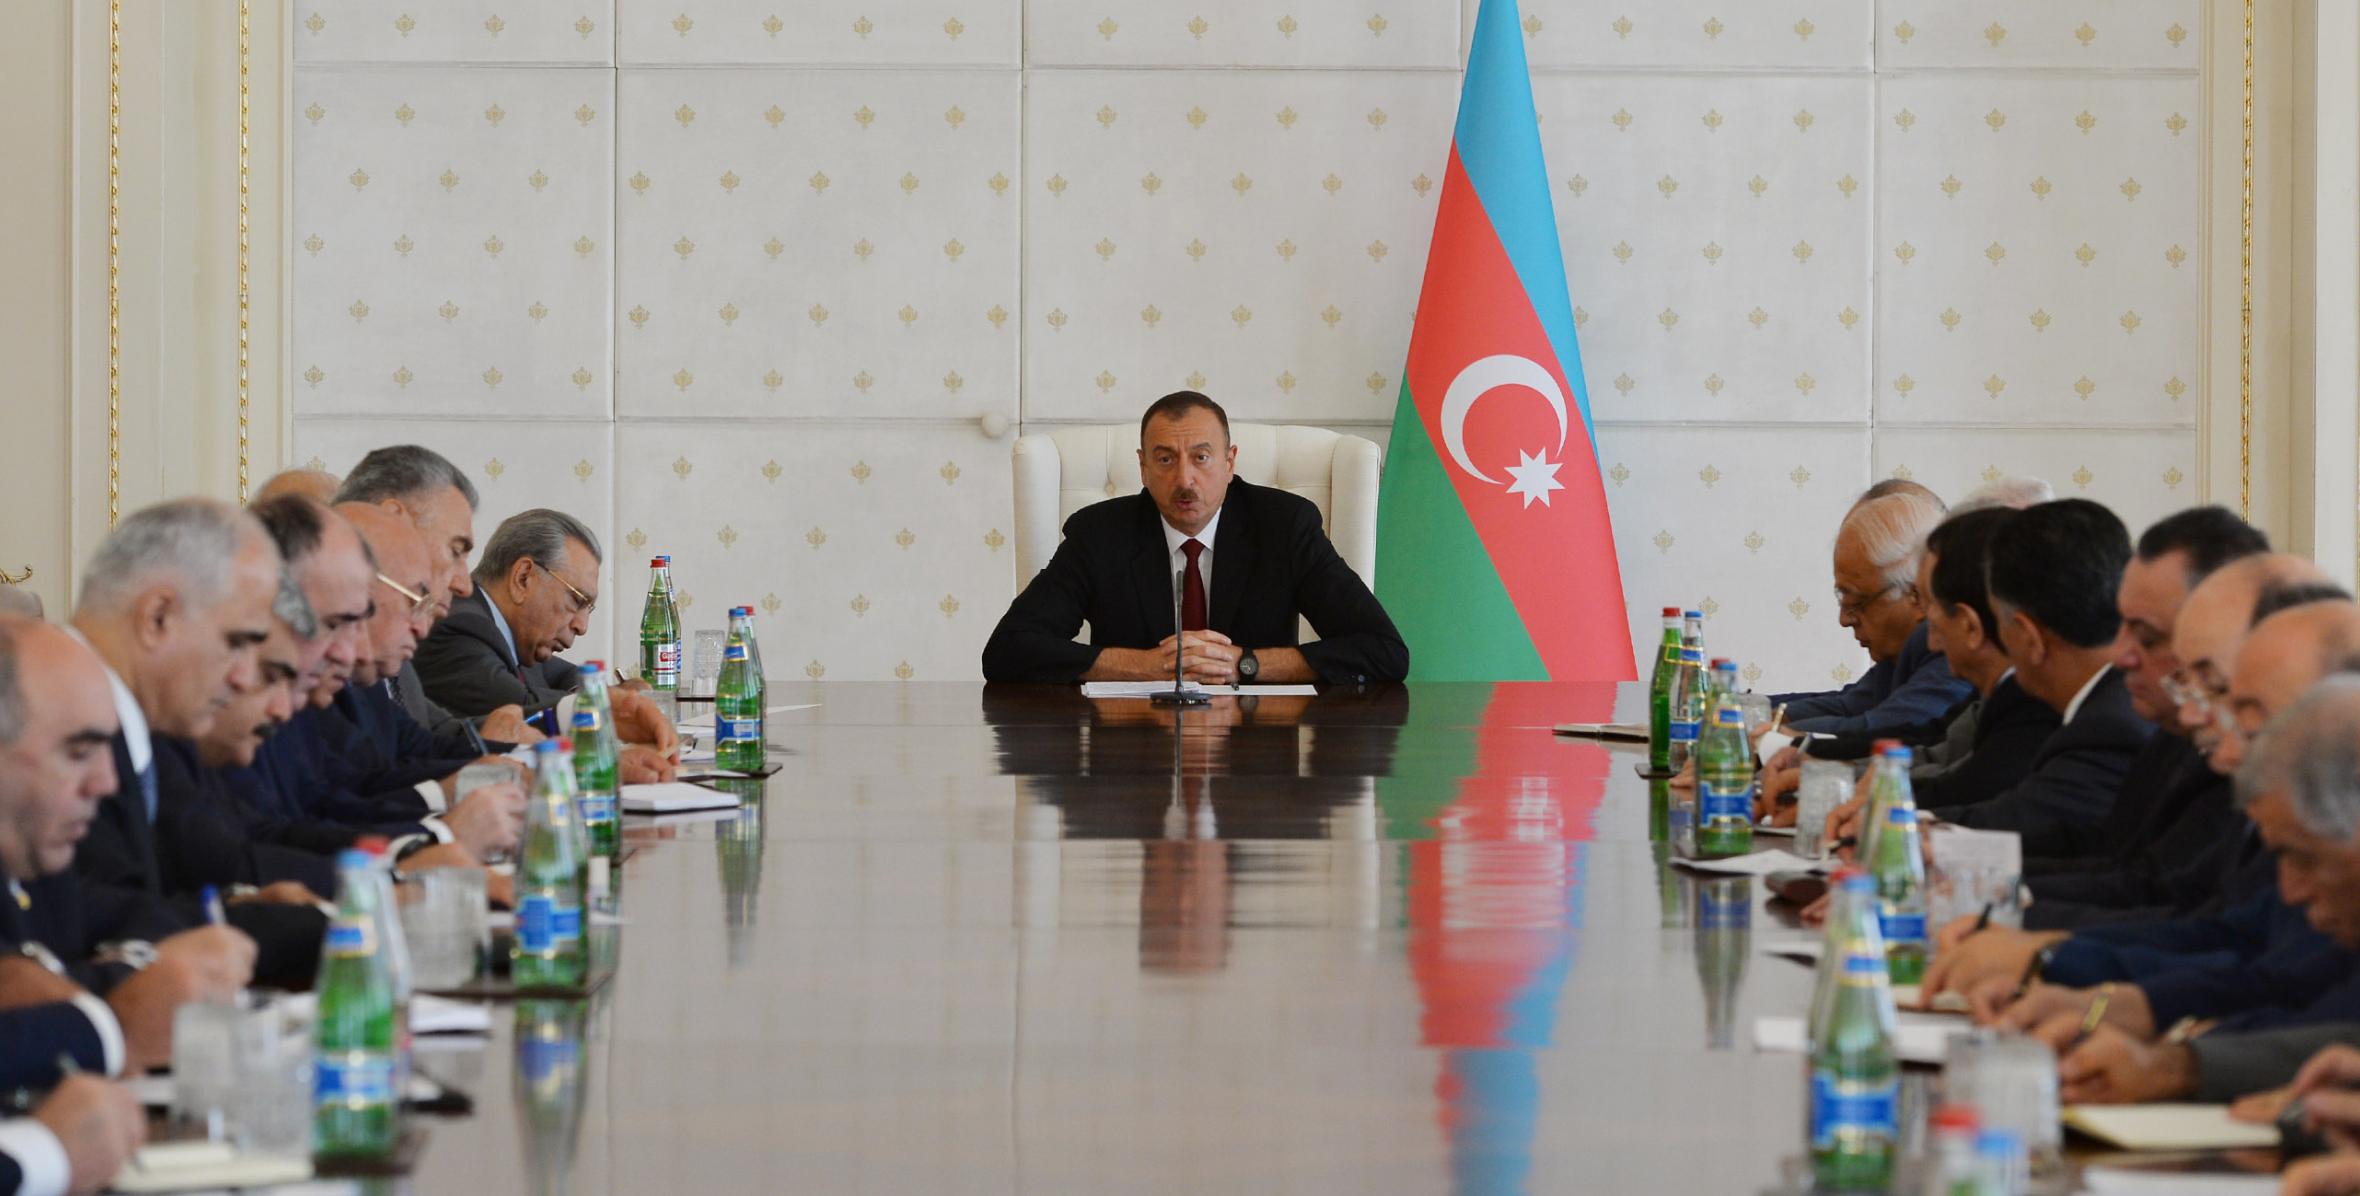 Под председательством Ильхама Алиева состоялось заседание Кабинета Министров, посвященное итогам социально-экономического развития в первом полугодии 2015 года и предстоящим задачам